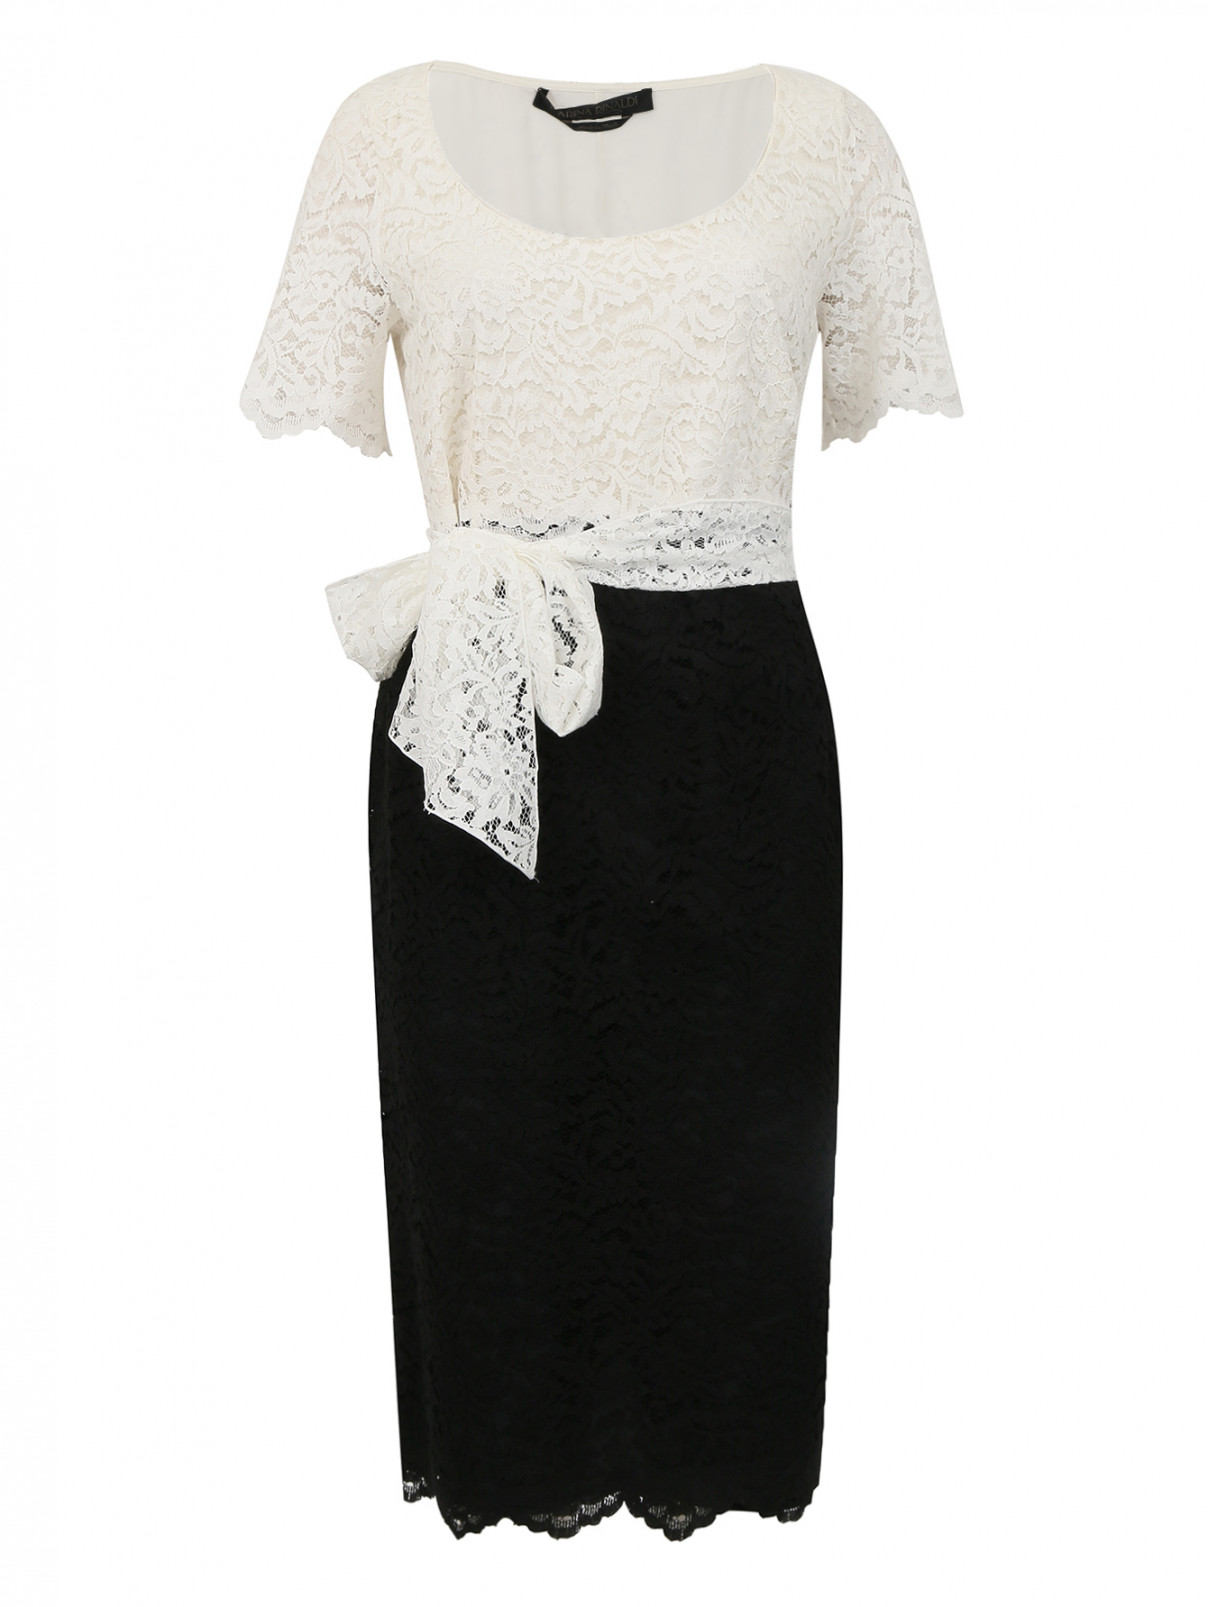 Кружевное платье из хлопка в комплекте с шарфом Marina Rinaldi  –  Общий вид  – Цвет:  Белый